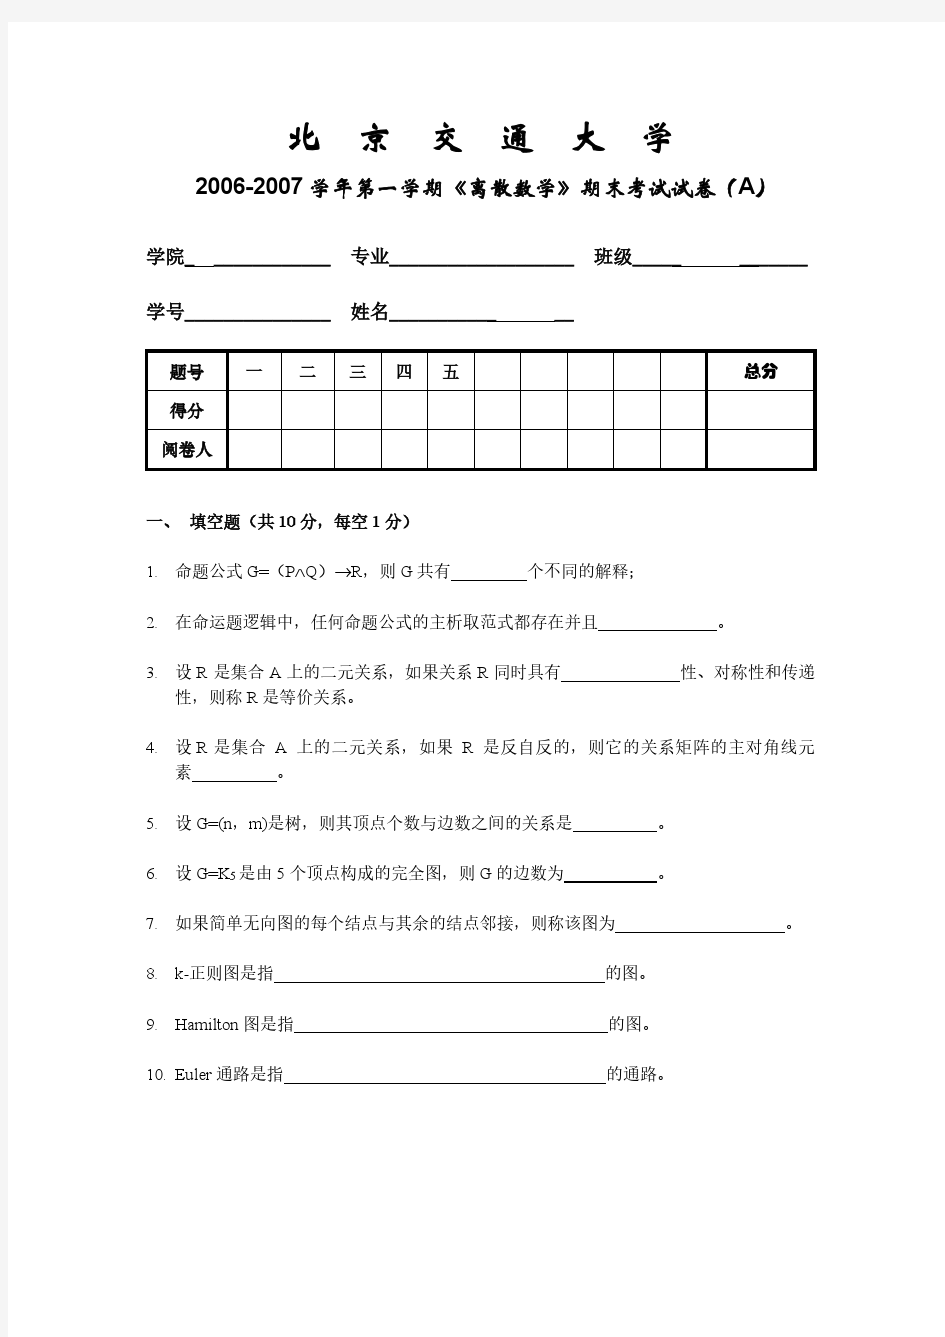 北京交通大学离散数学期末考试题-06-07-1-A-试卷-公选